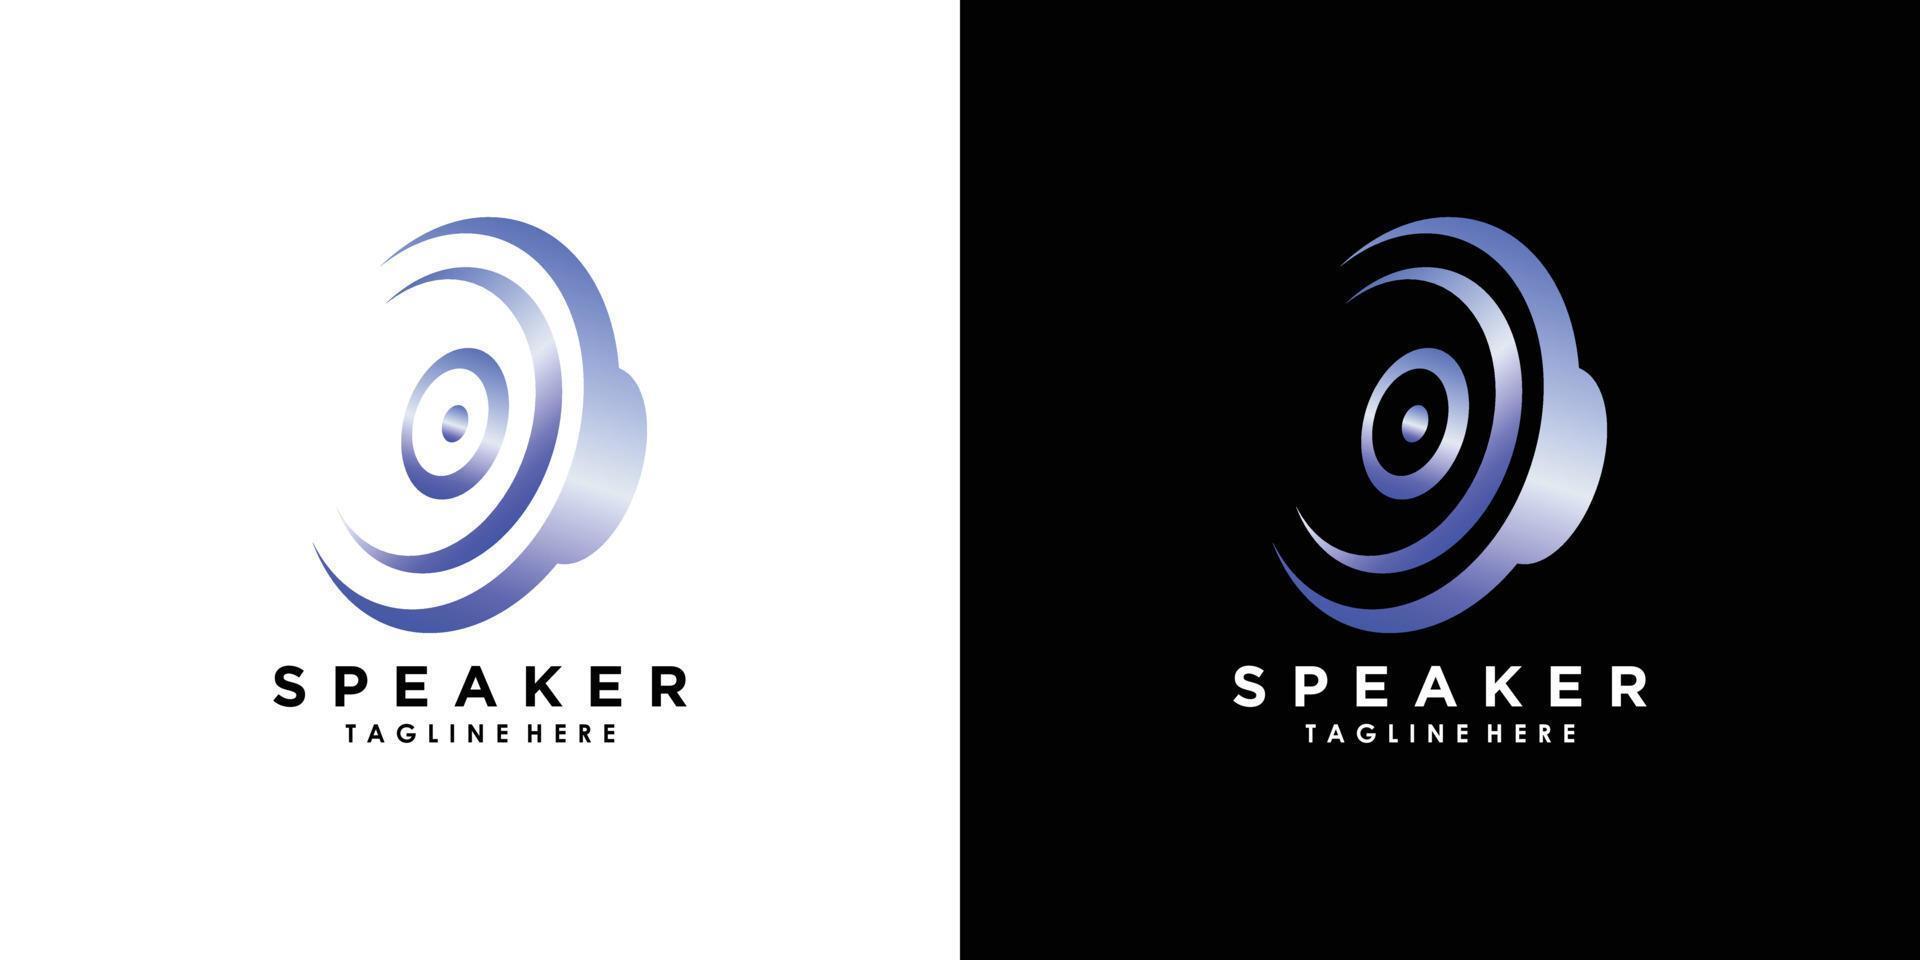 spreker geluid systeem logo ontwerp met creatief concept premie vector